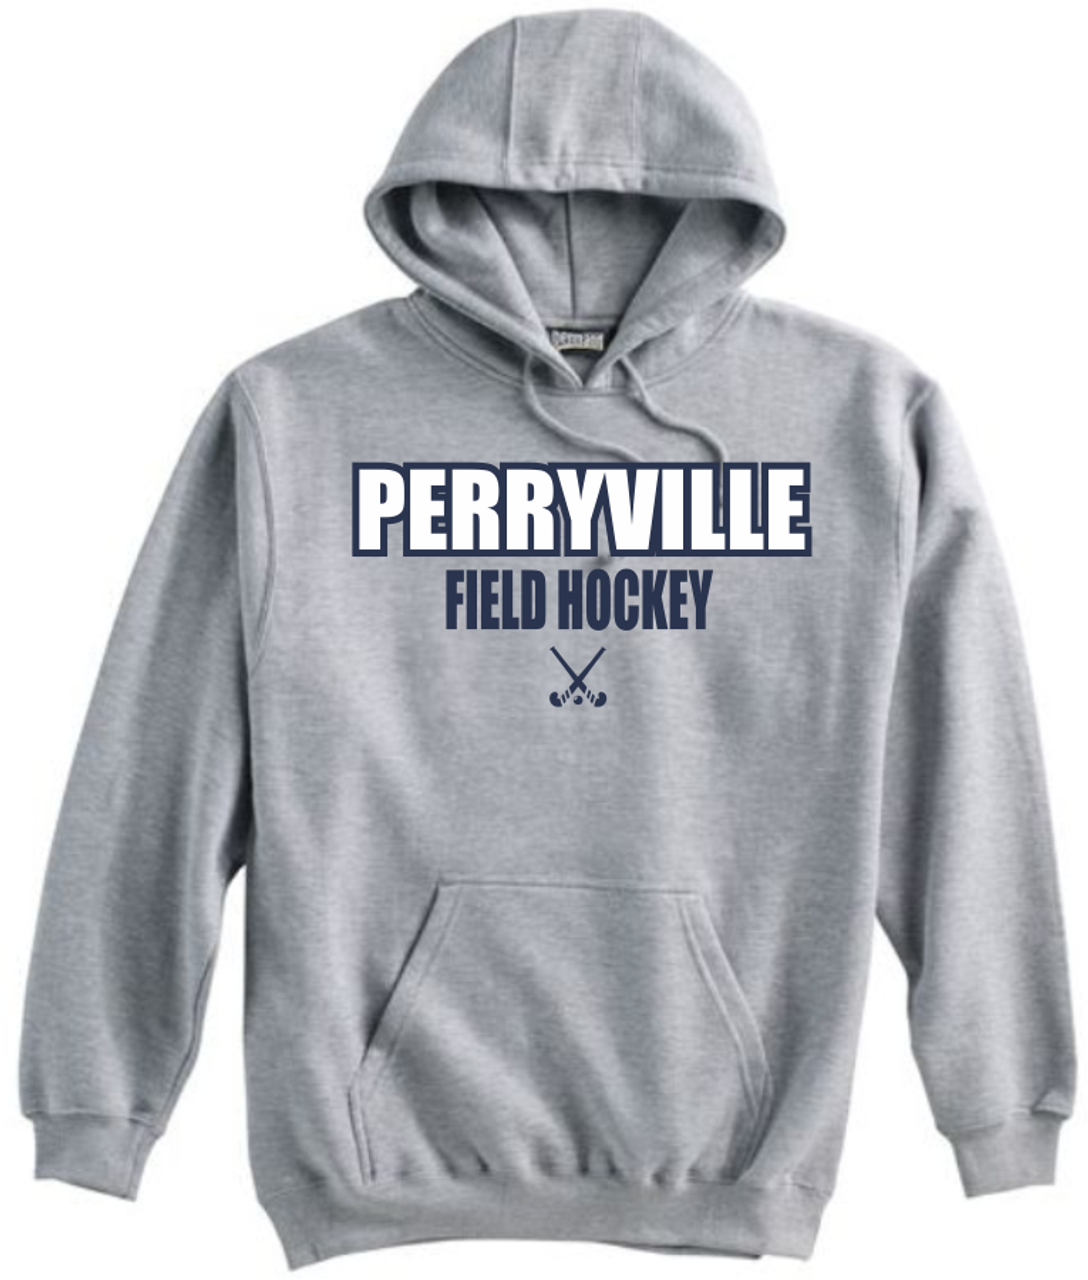 Perryville Field Hockey Hoodie, Grey